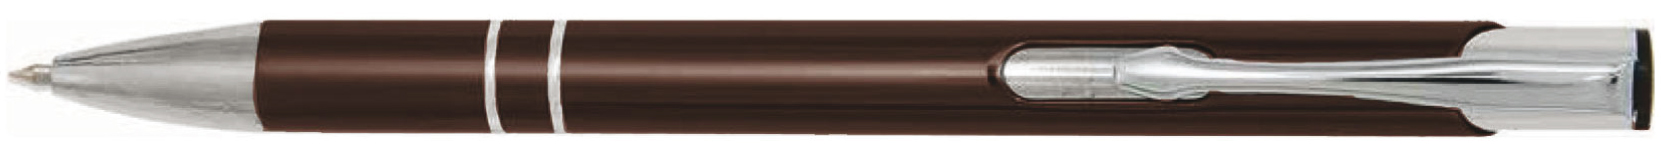 BestPen - penna promozionale in metallo con incisione C-23